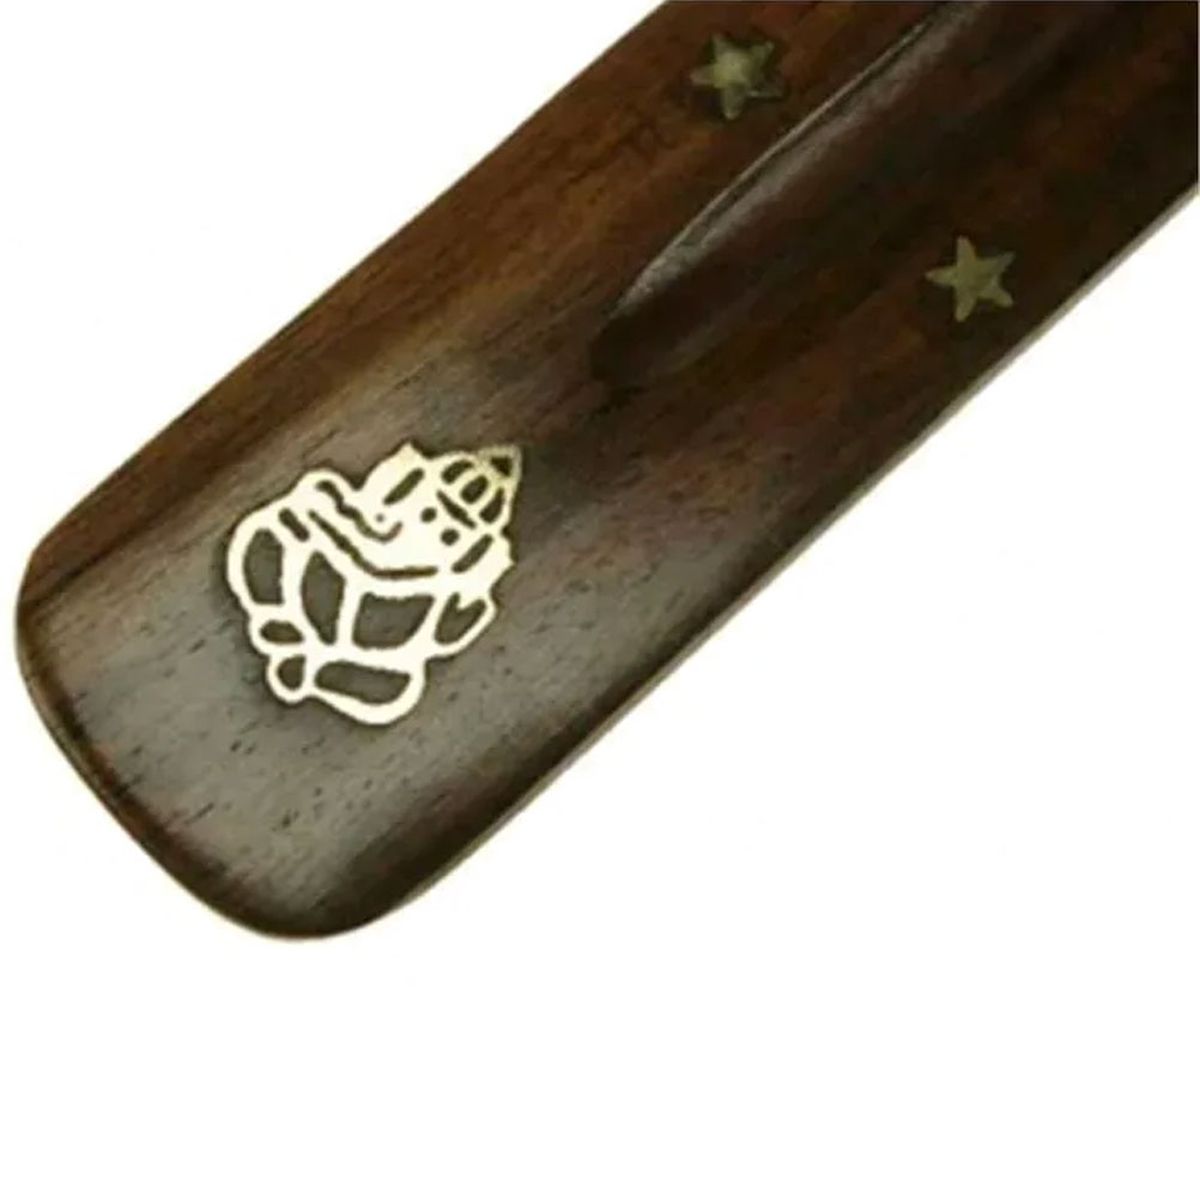 Incense stick holder - Ganesh